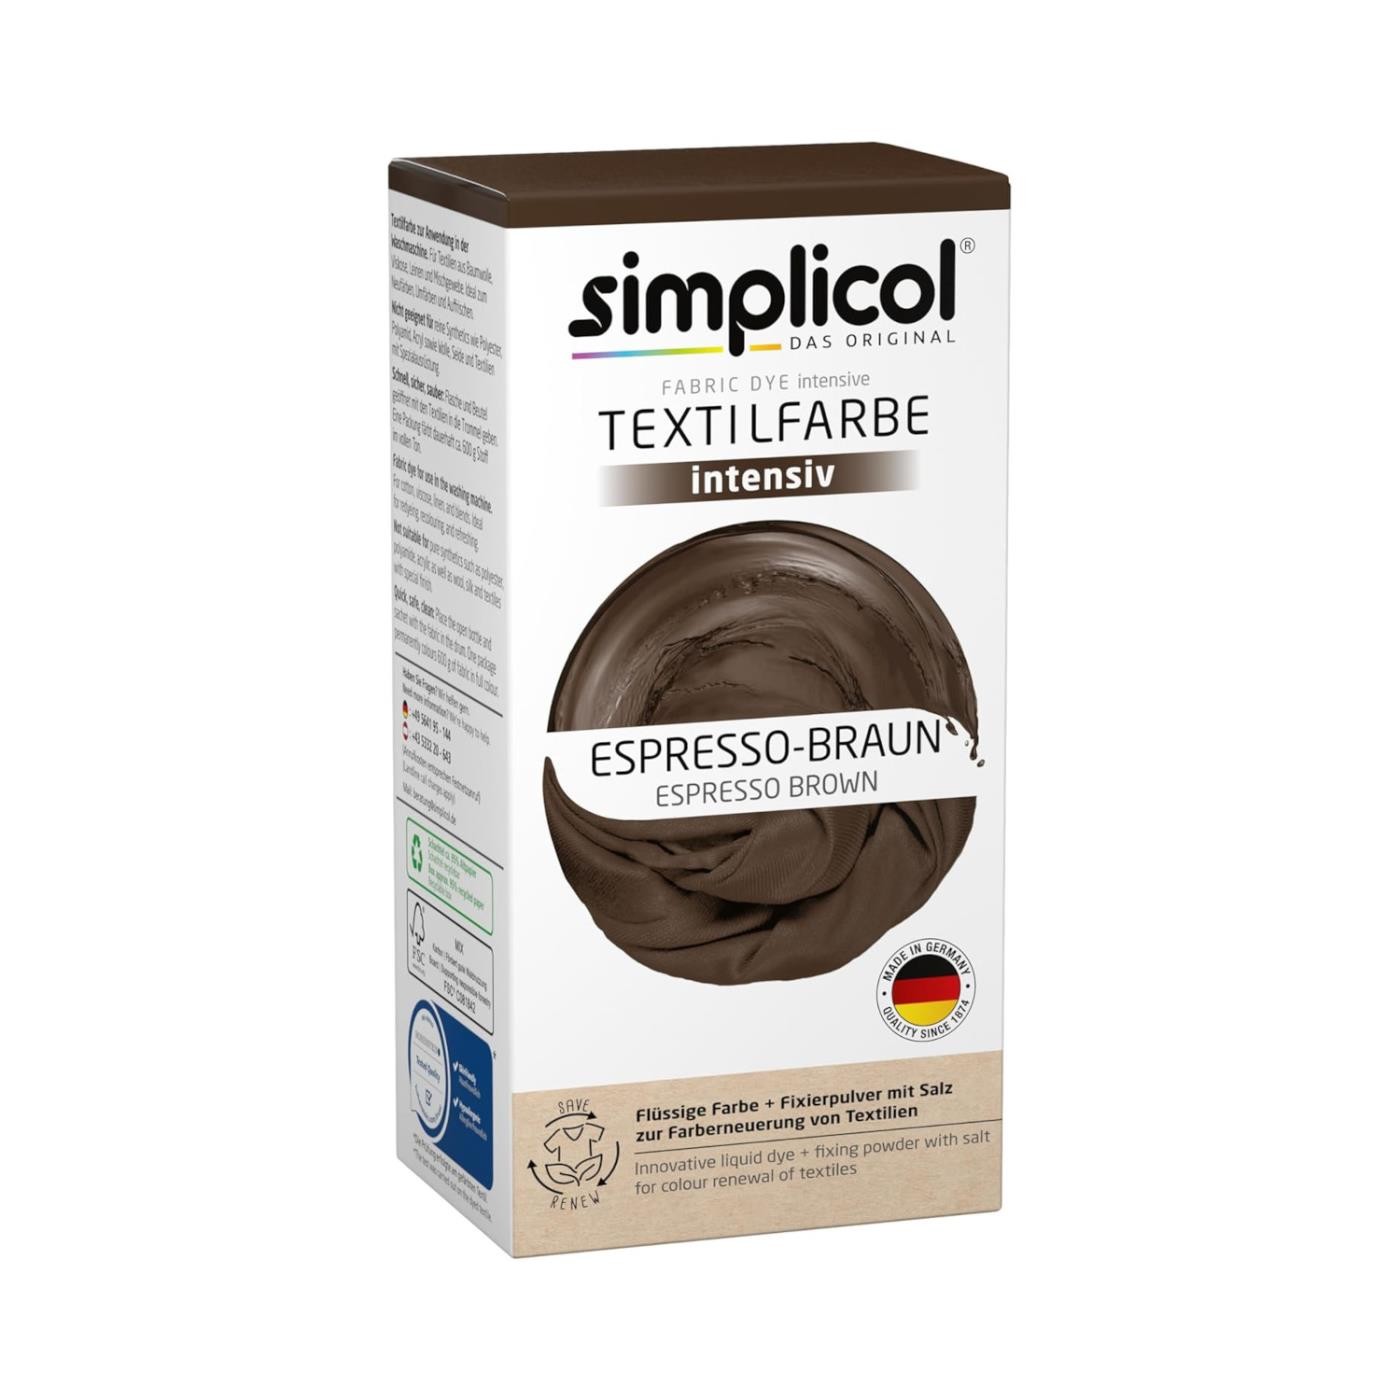 Simplicol Textilfarbe intensiv Espresso-Braun 150g